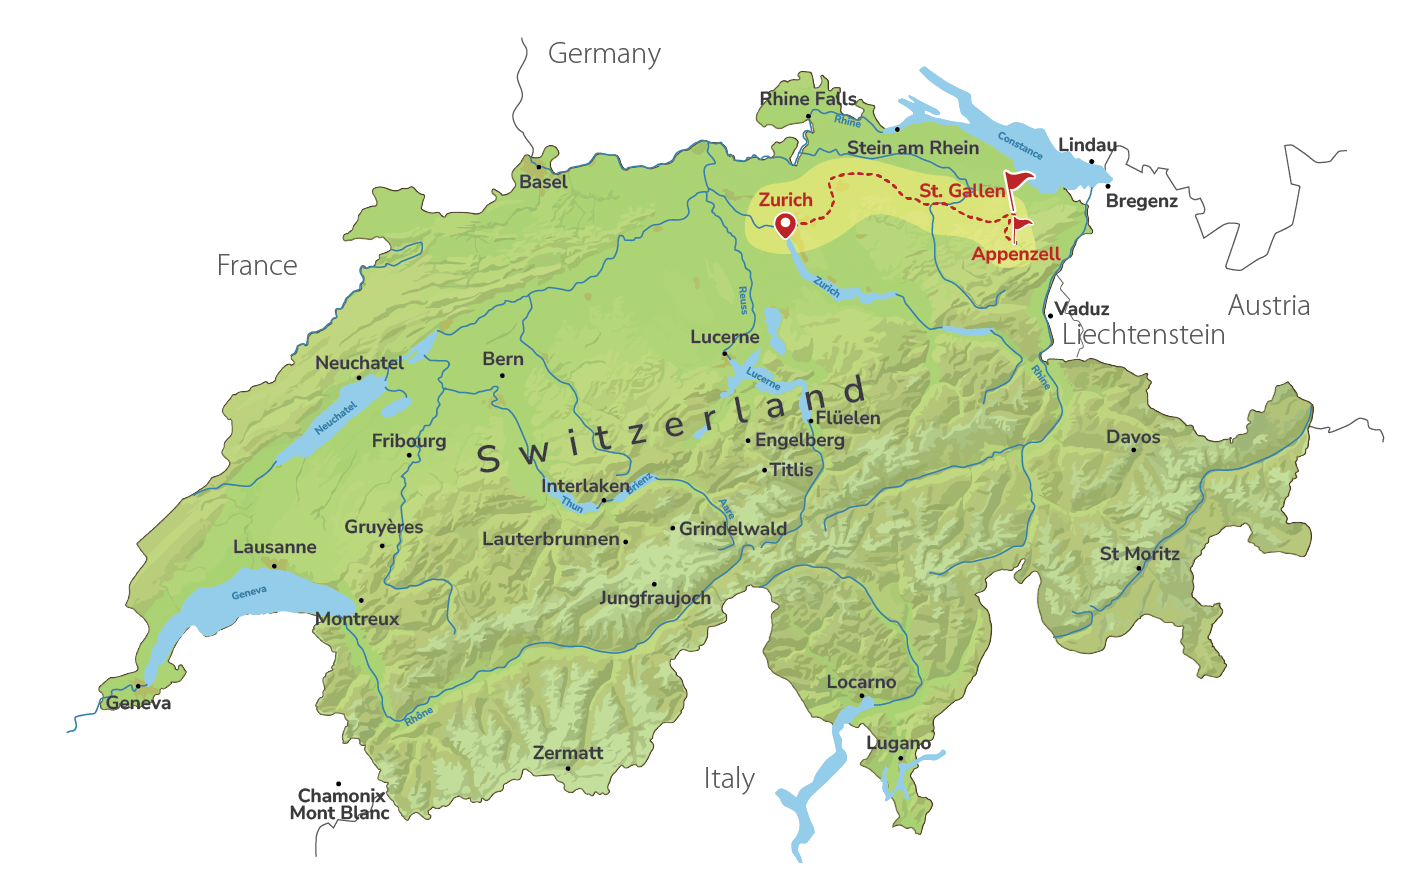 St. Gallen & Appenzell on Private Trip from Zurich